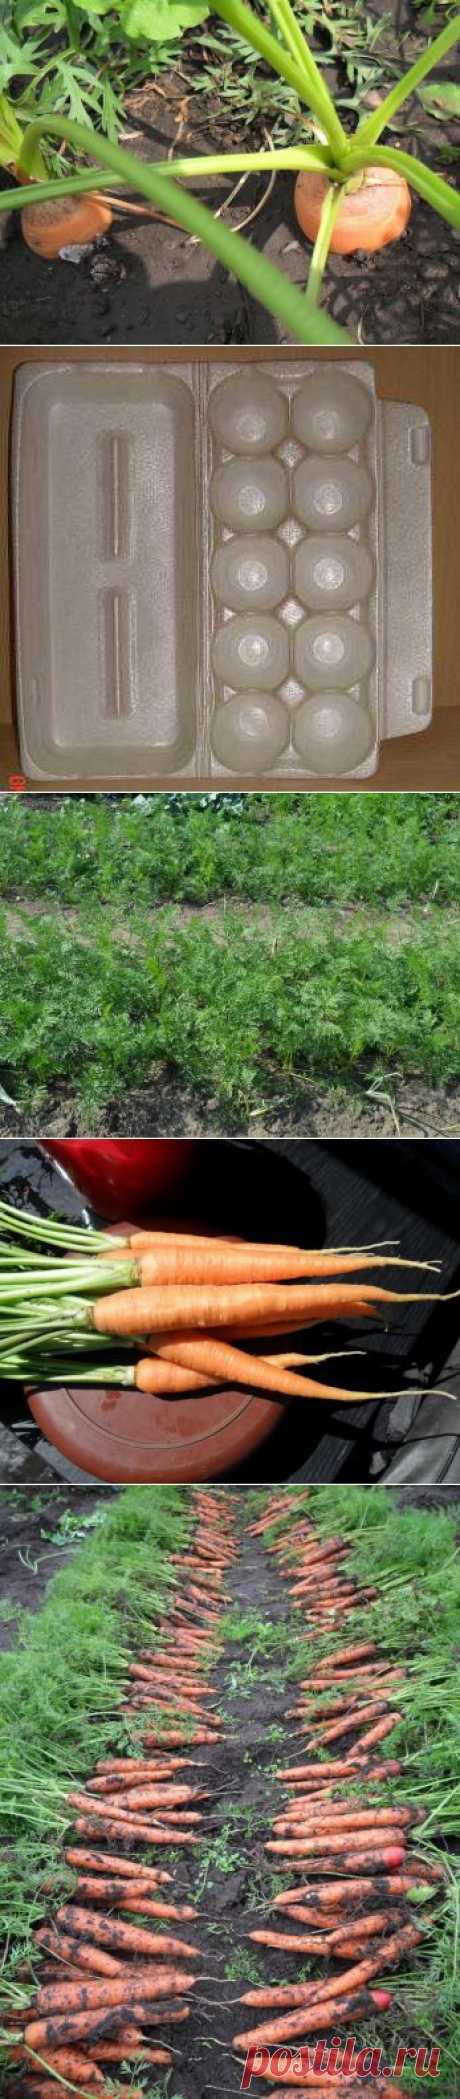 Как получить хороший урожай моркови.